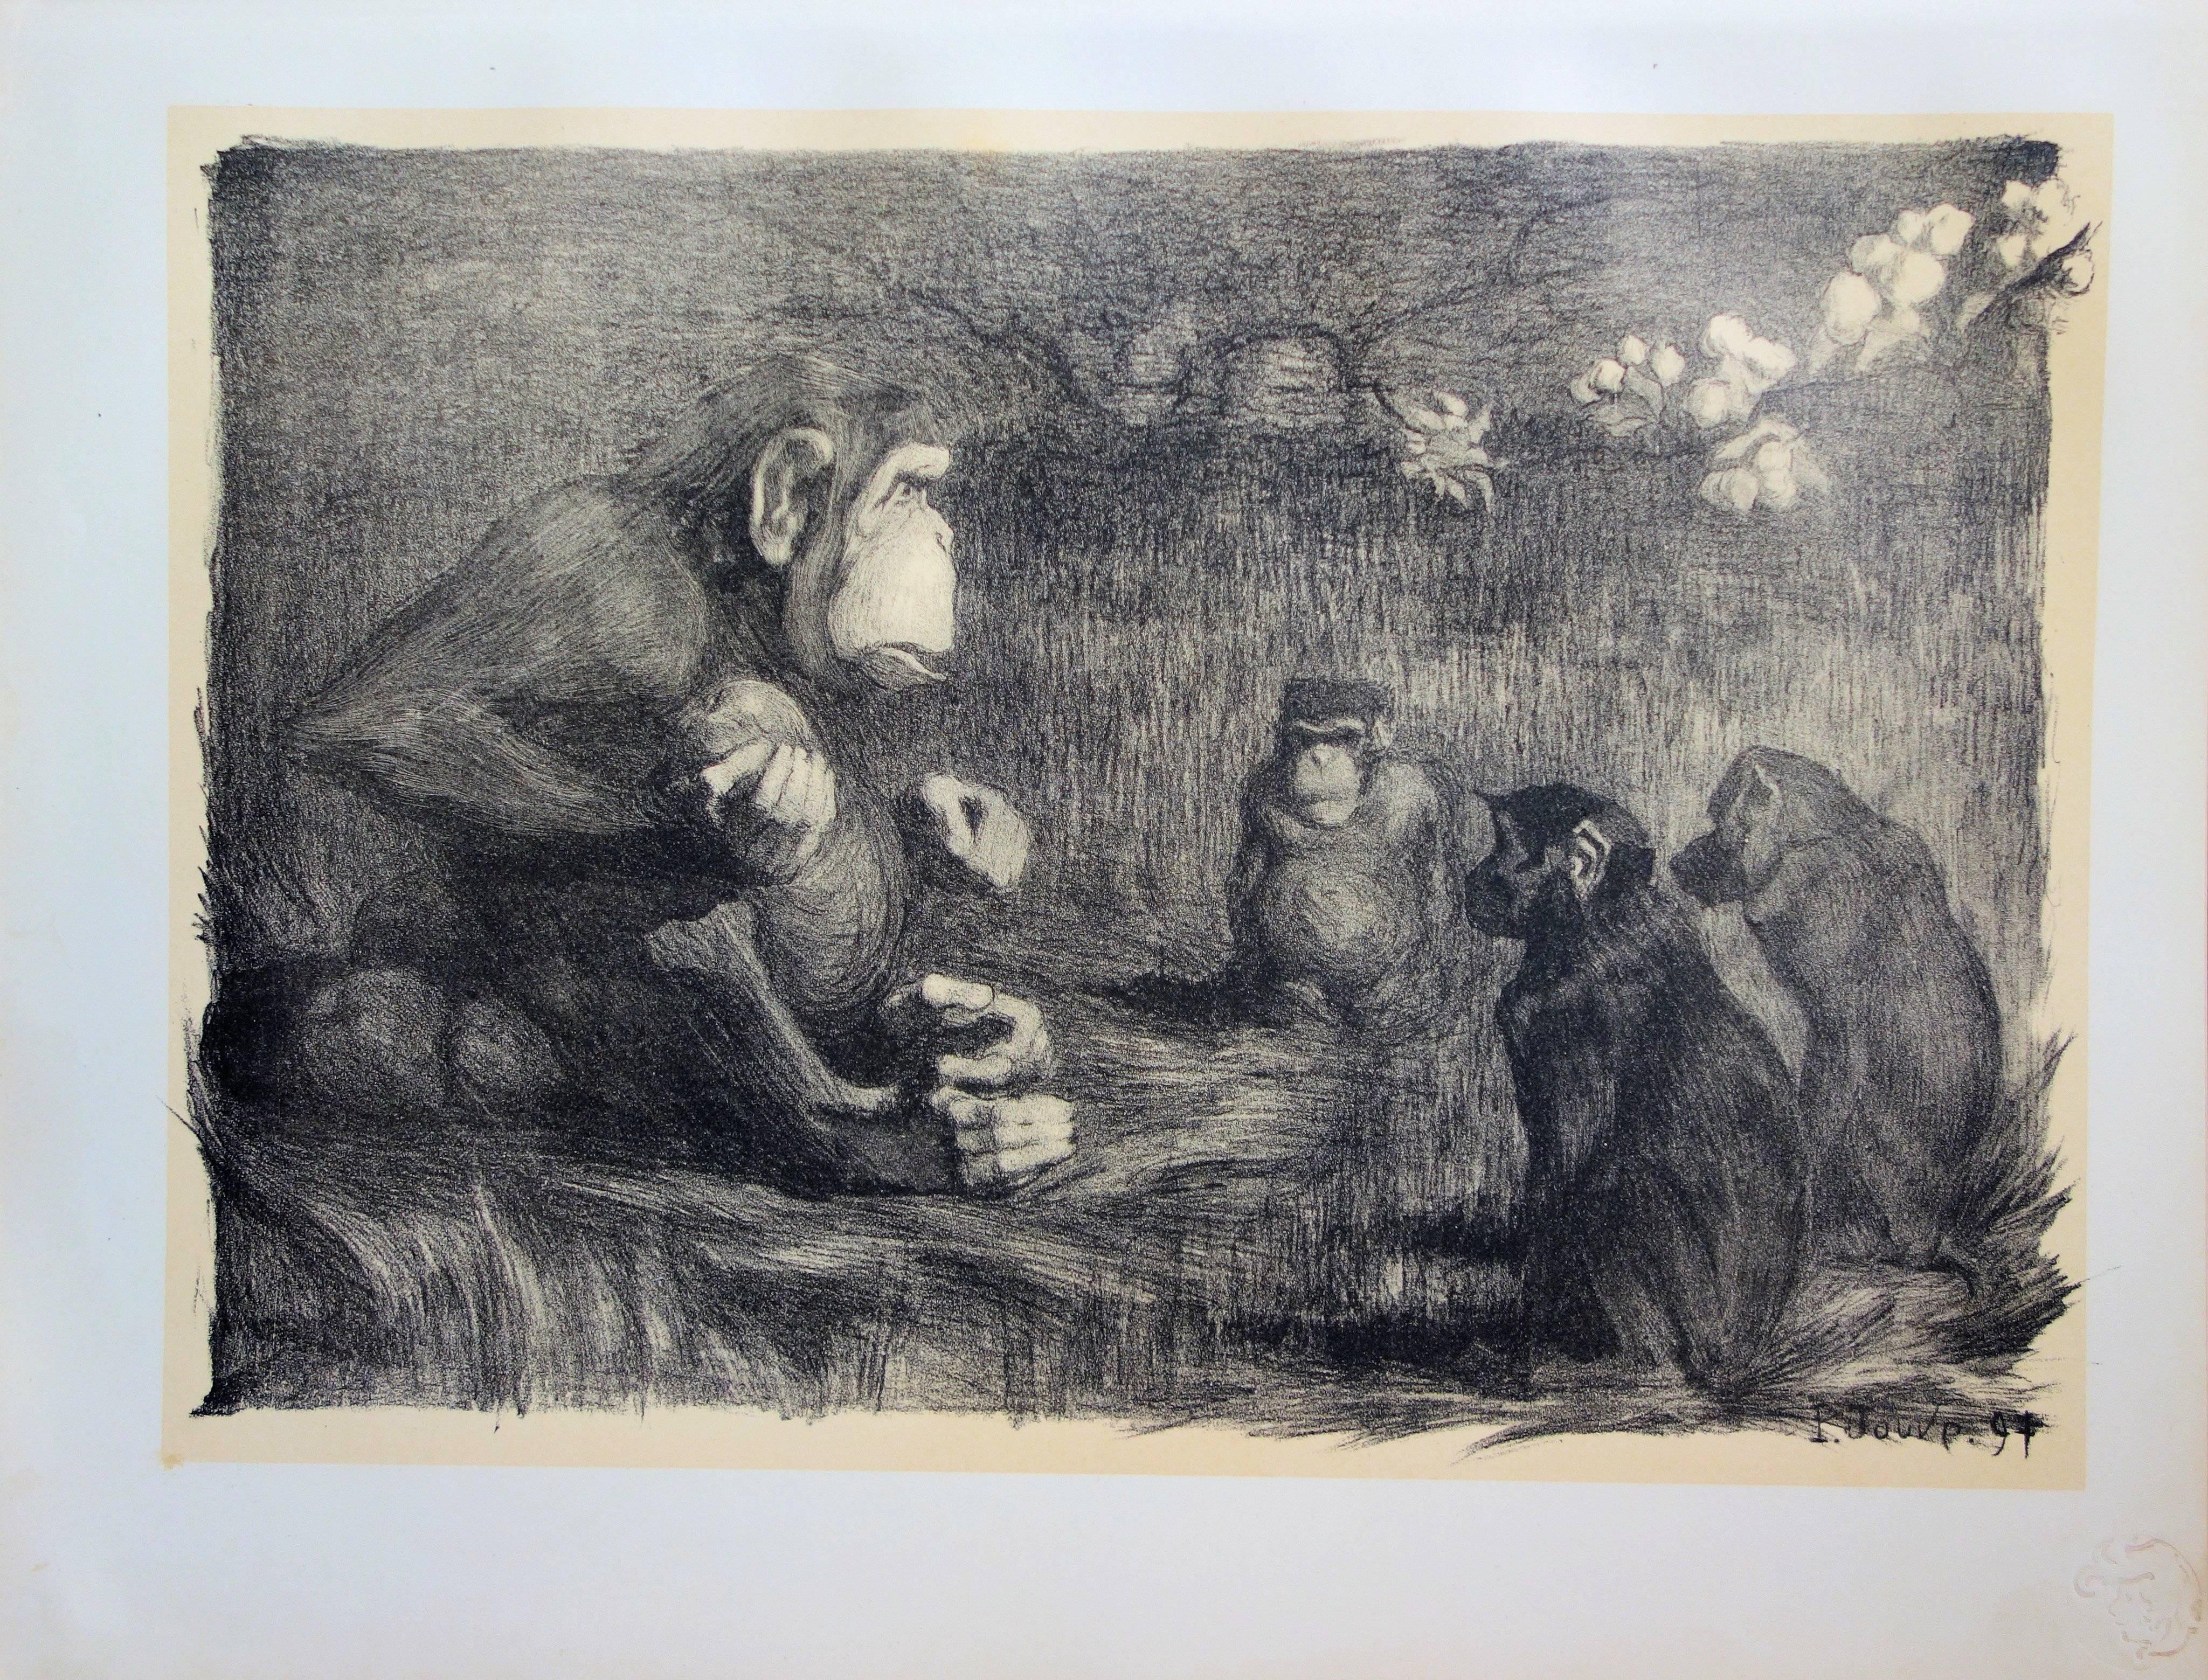 Pierre-Paul Jouve Figurative Print - The Judgment of Paris (Monkeys) - original lithograph (1897-1898)